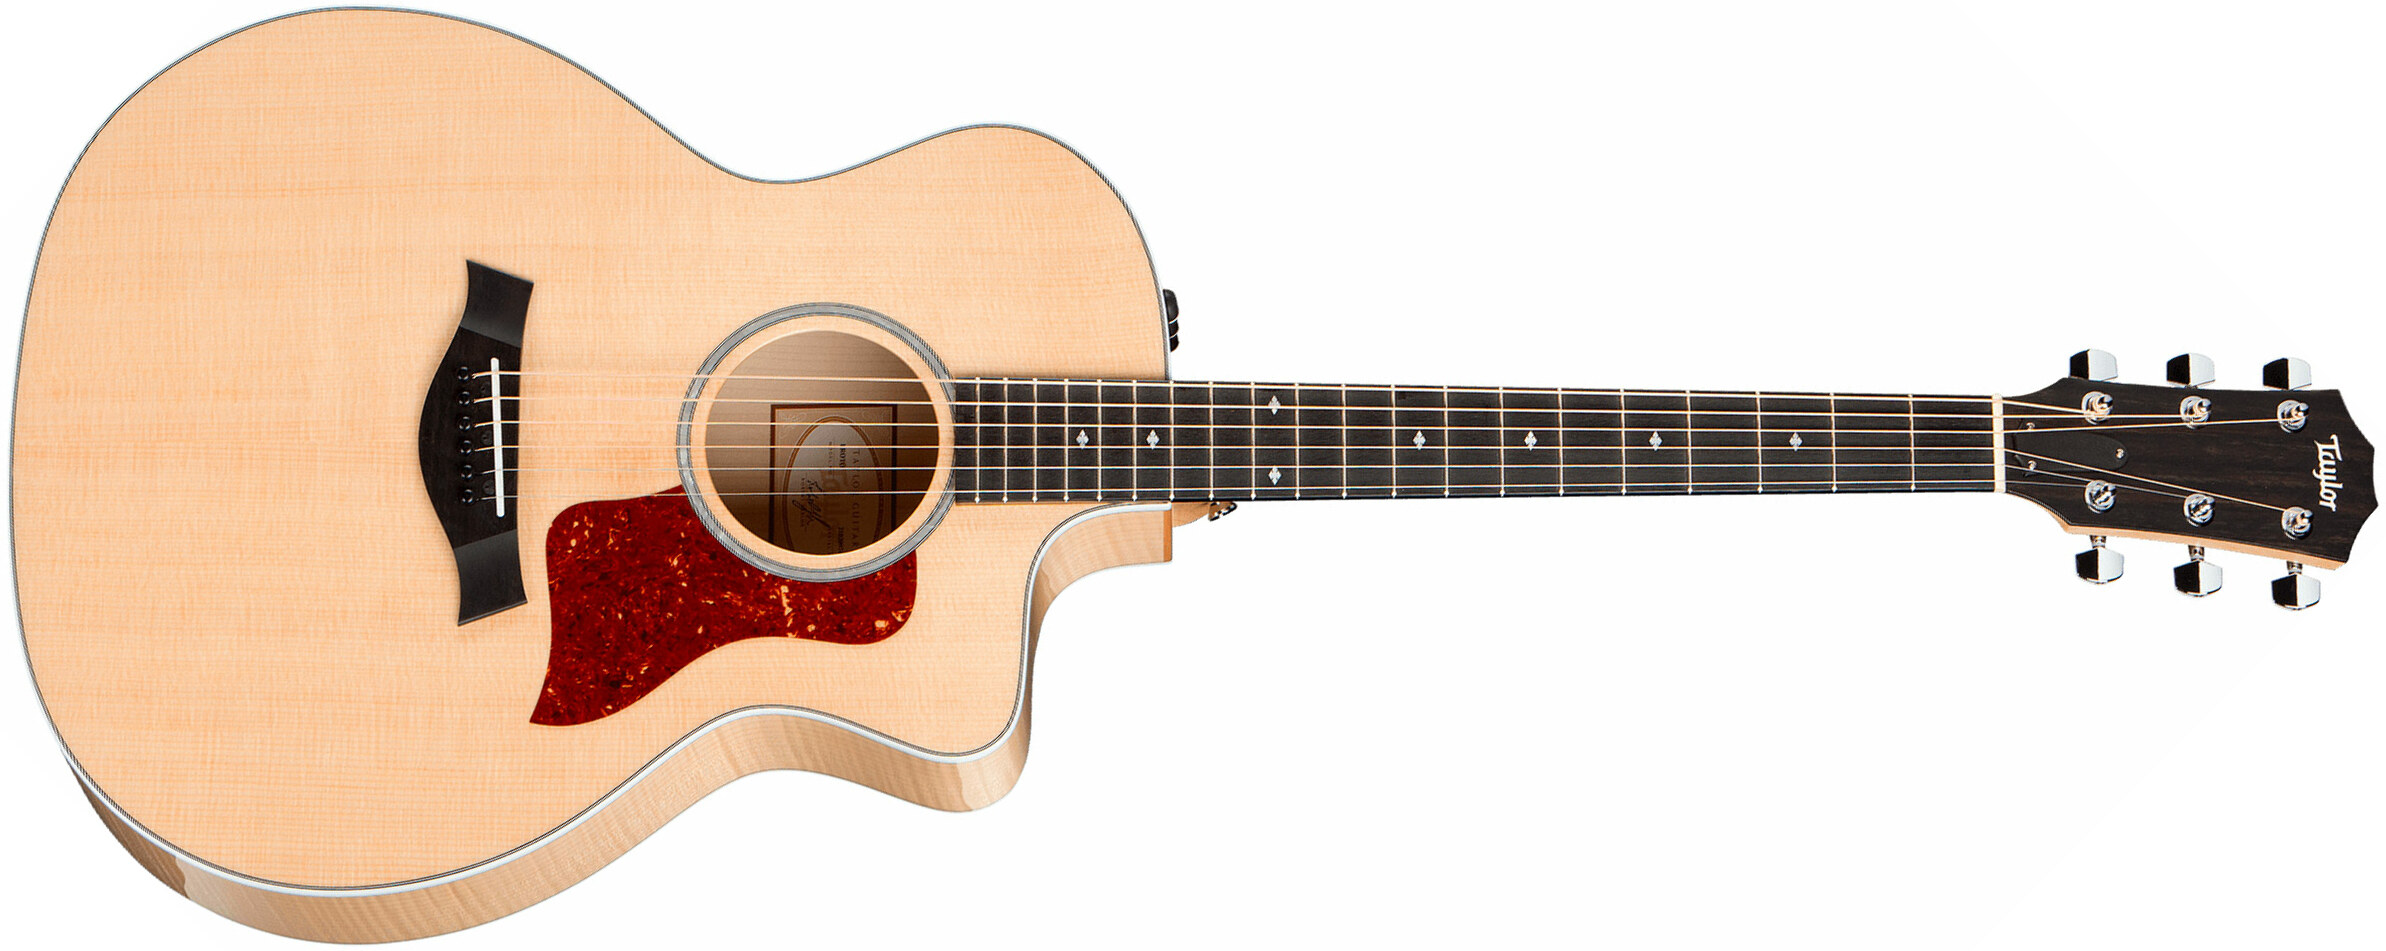 Taylor 214ce-fm Dlx Grand Auditorium Cw Epicea Erable Es2 - Natural - Electro acoustic guitar - Main picture